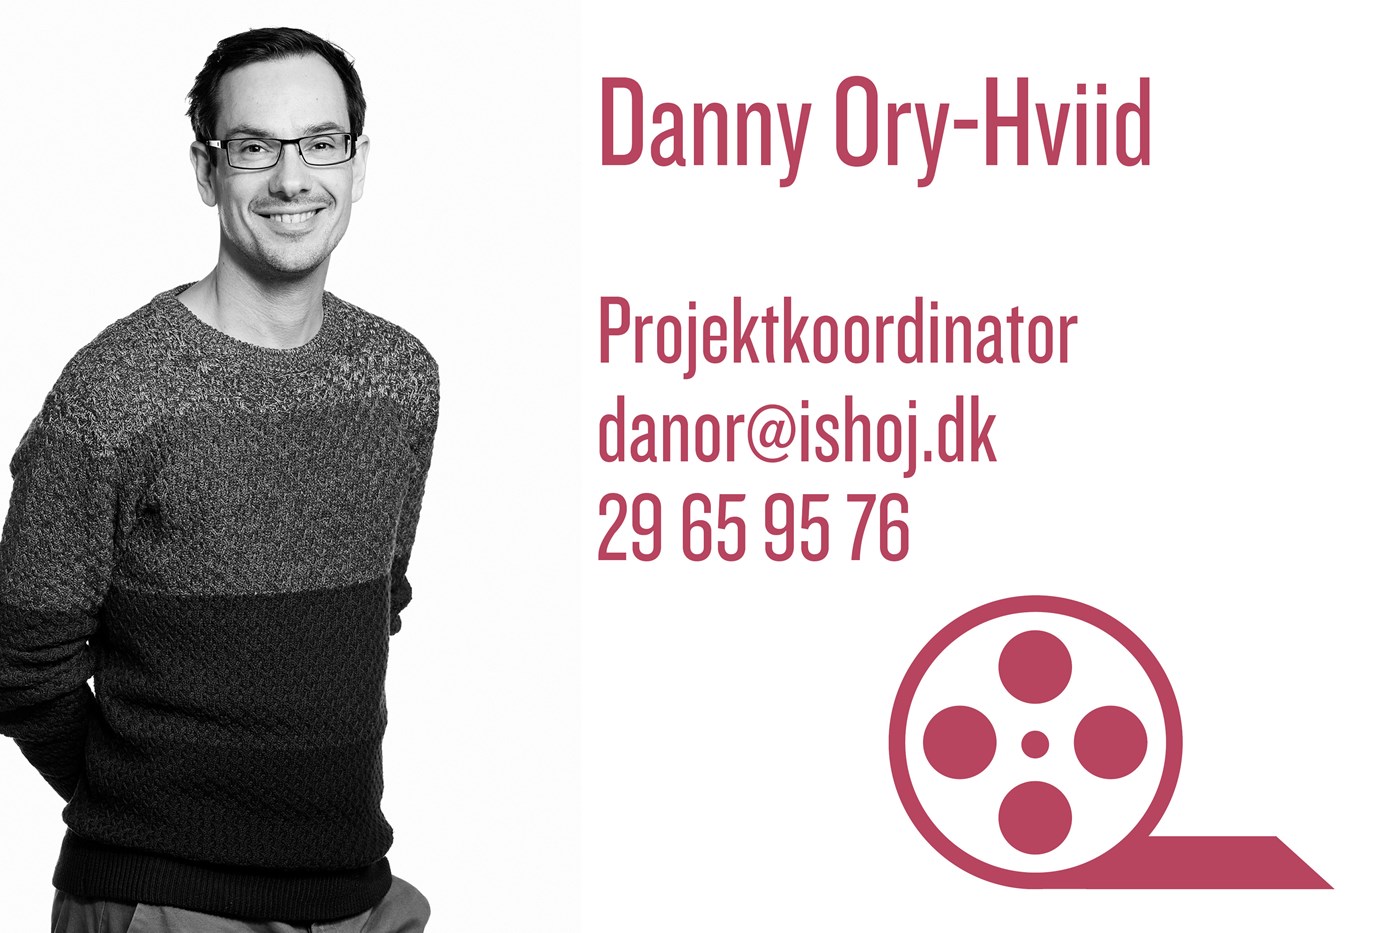 Danny Ory-Hviid er projektkoordinator på vores filmklubber